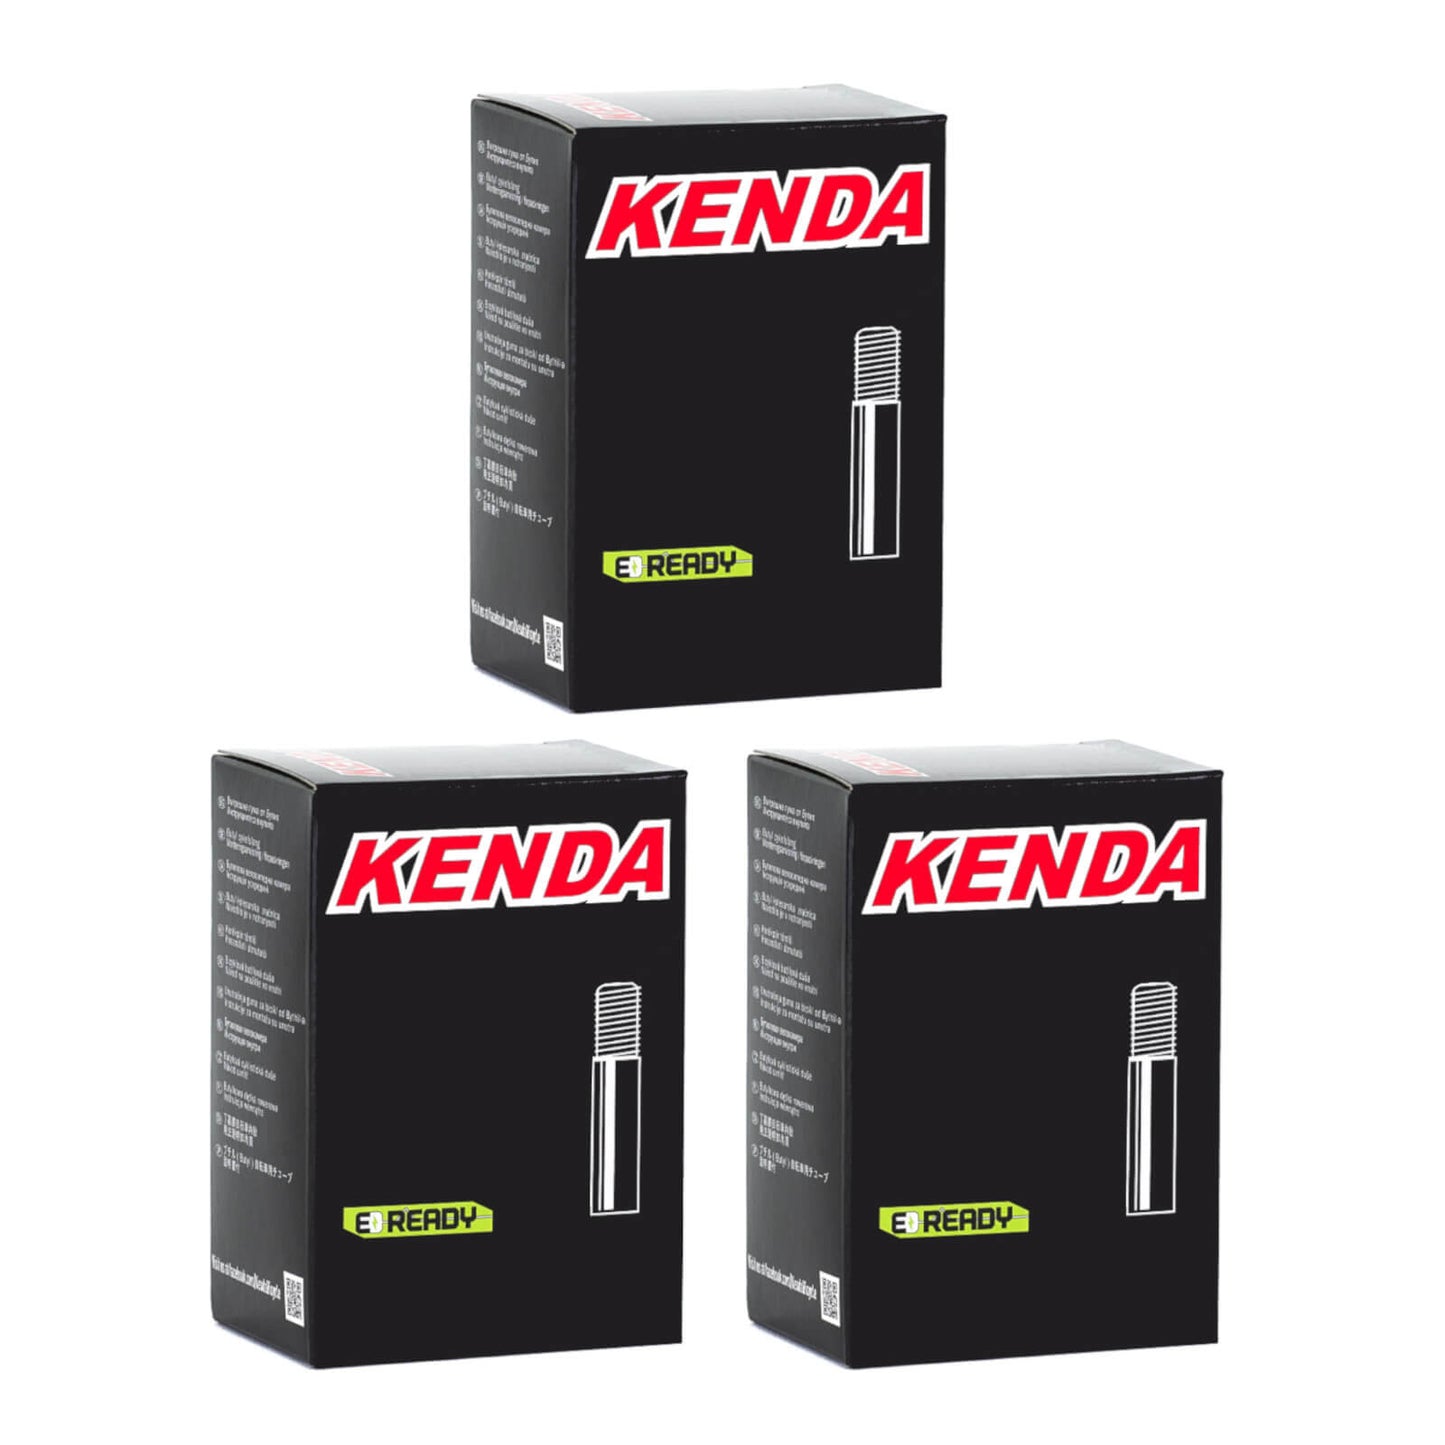 Kenda 700x28-35c 700c Schrader Valve Bike Inner Tube Pack of 3